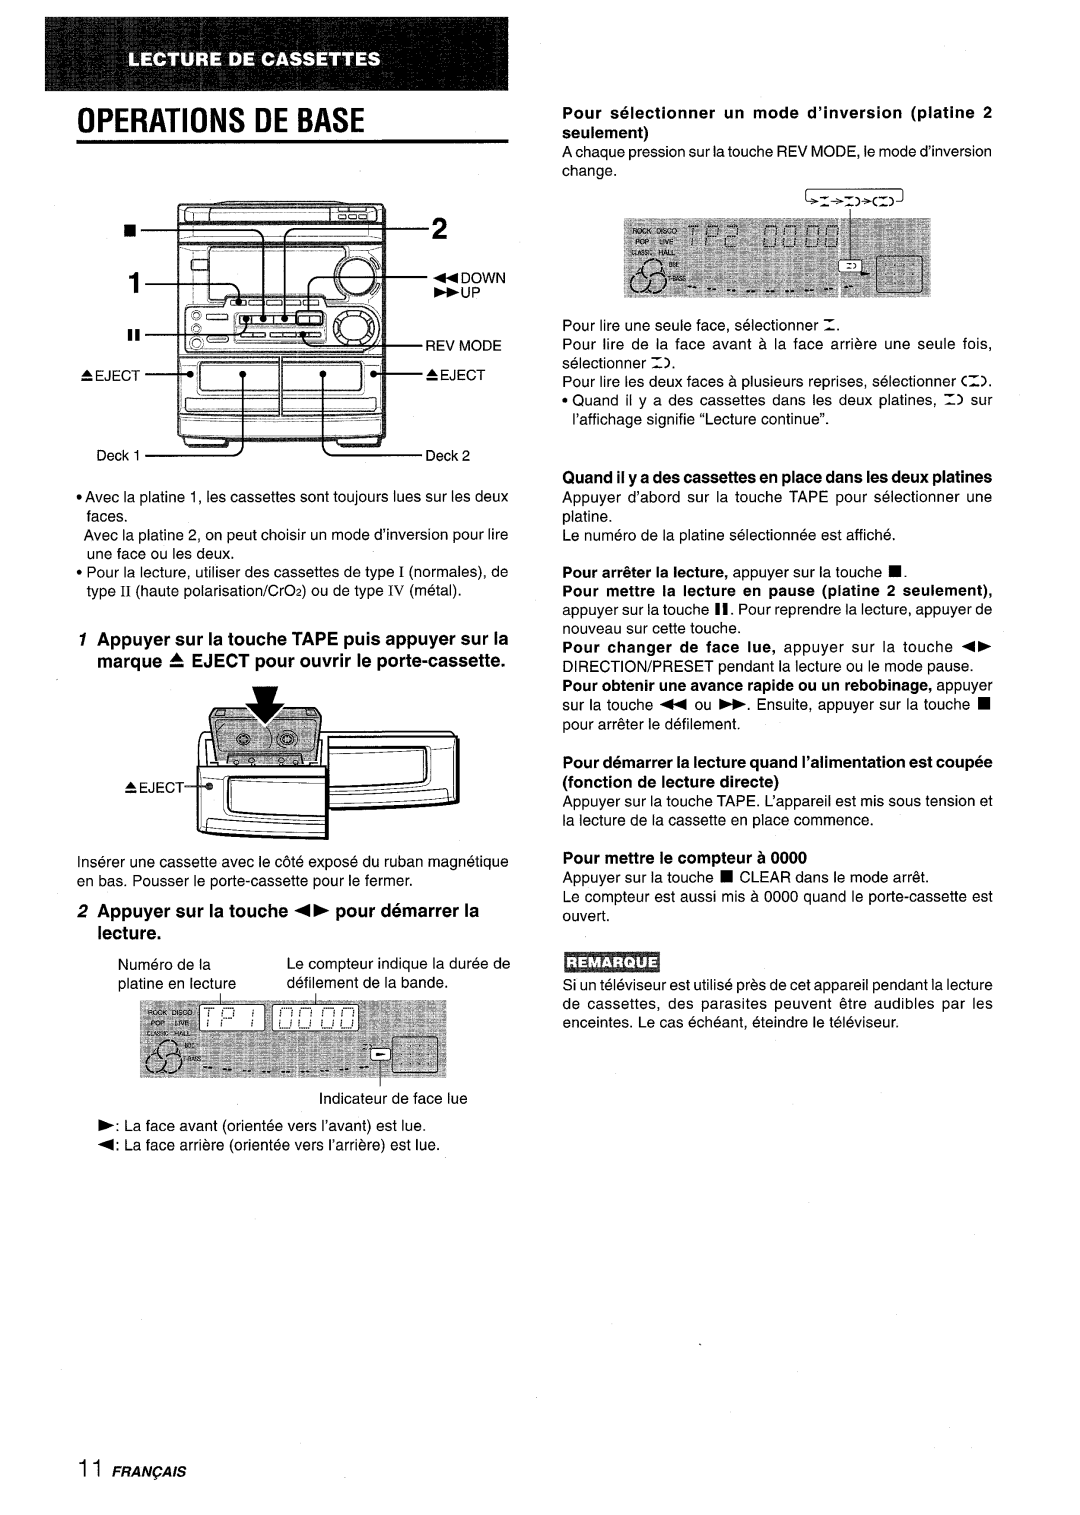 Aiwa CX-NMT50 manual Appuyer sur la touche TAPE puis appuyer sur la, marque 4 EJECT pour ouvrir Ie porte-cassette, 4b pour 